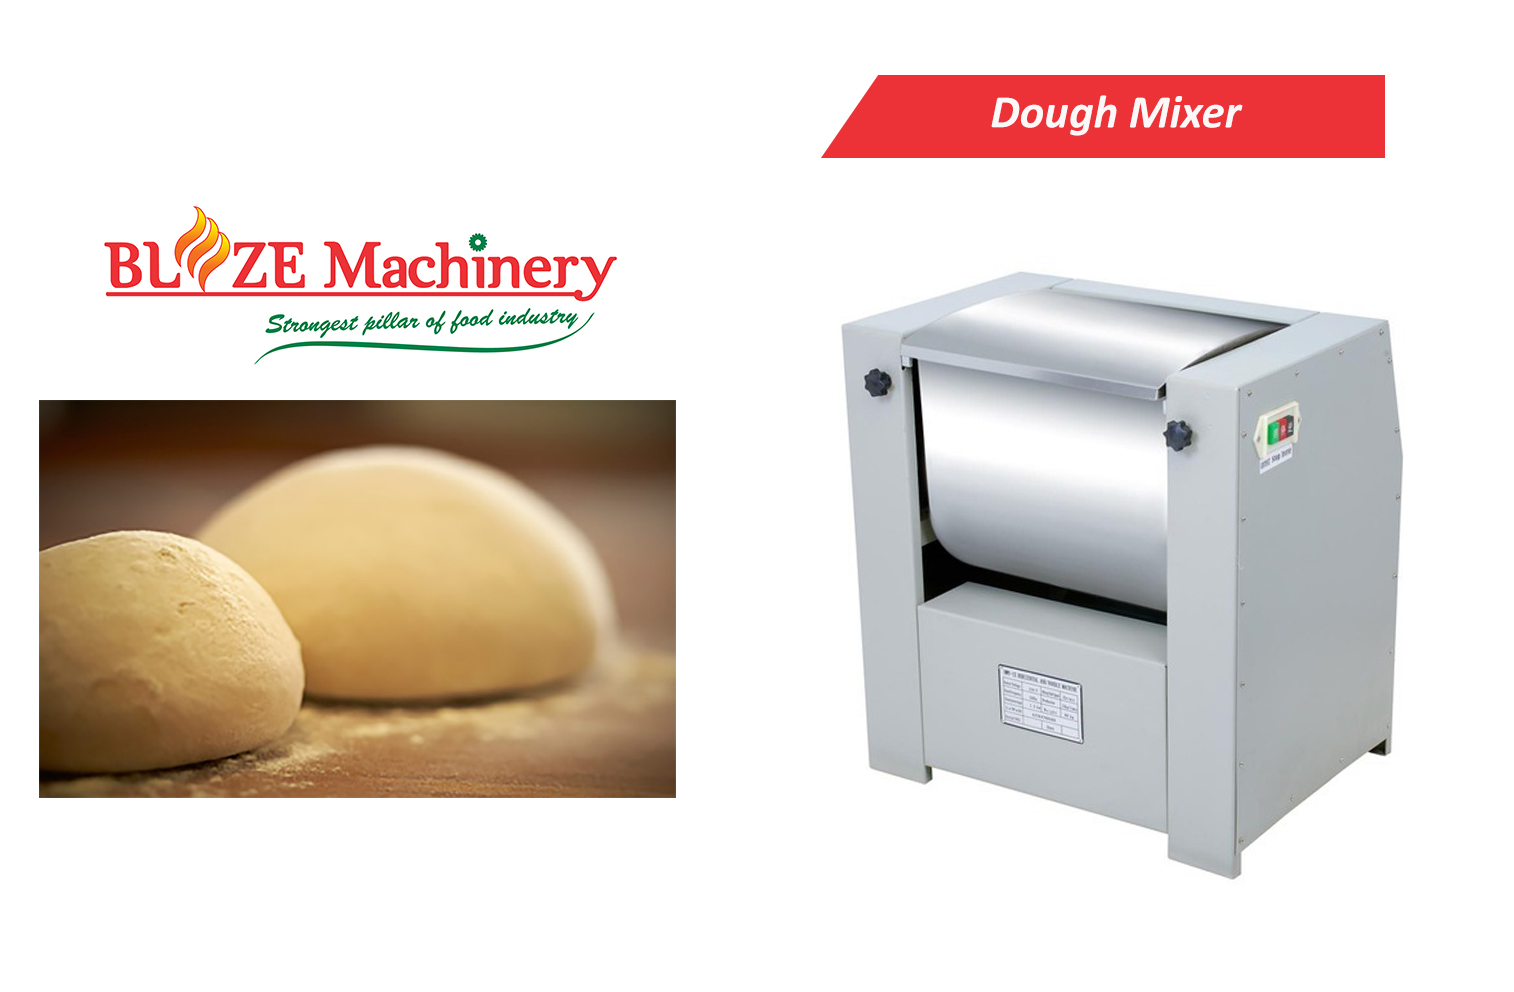 Dough Mixer